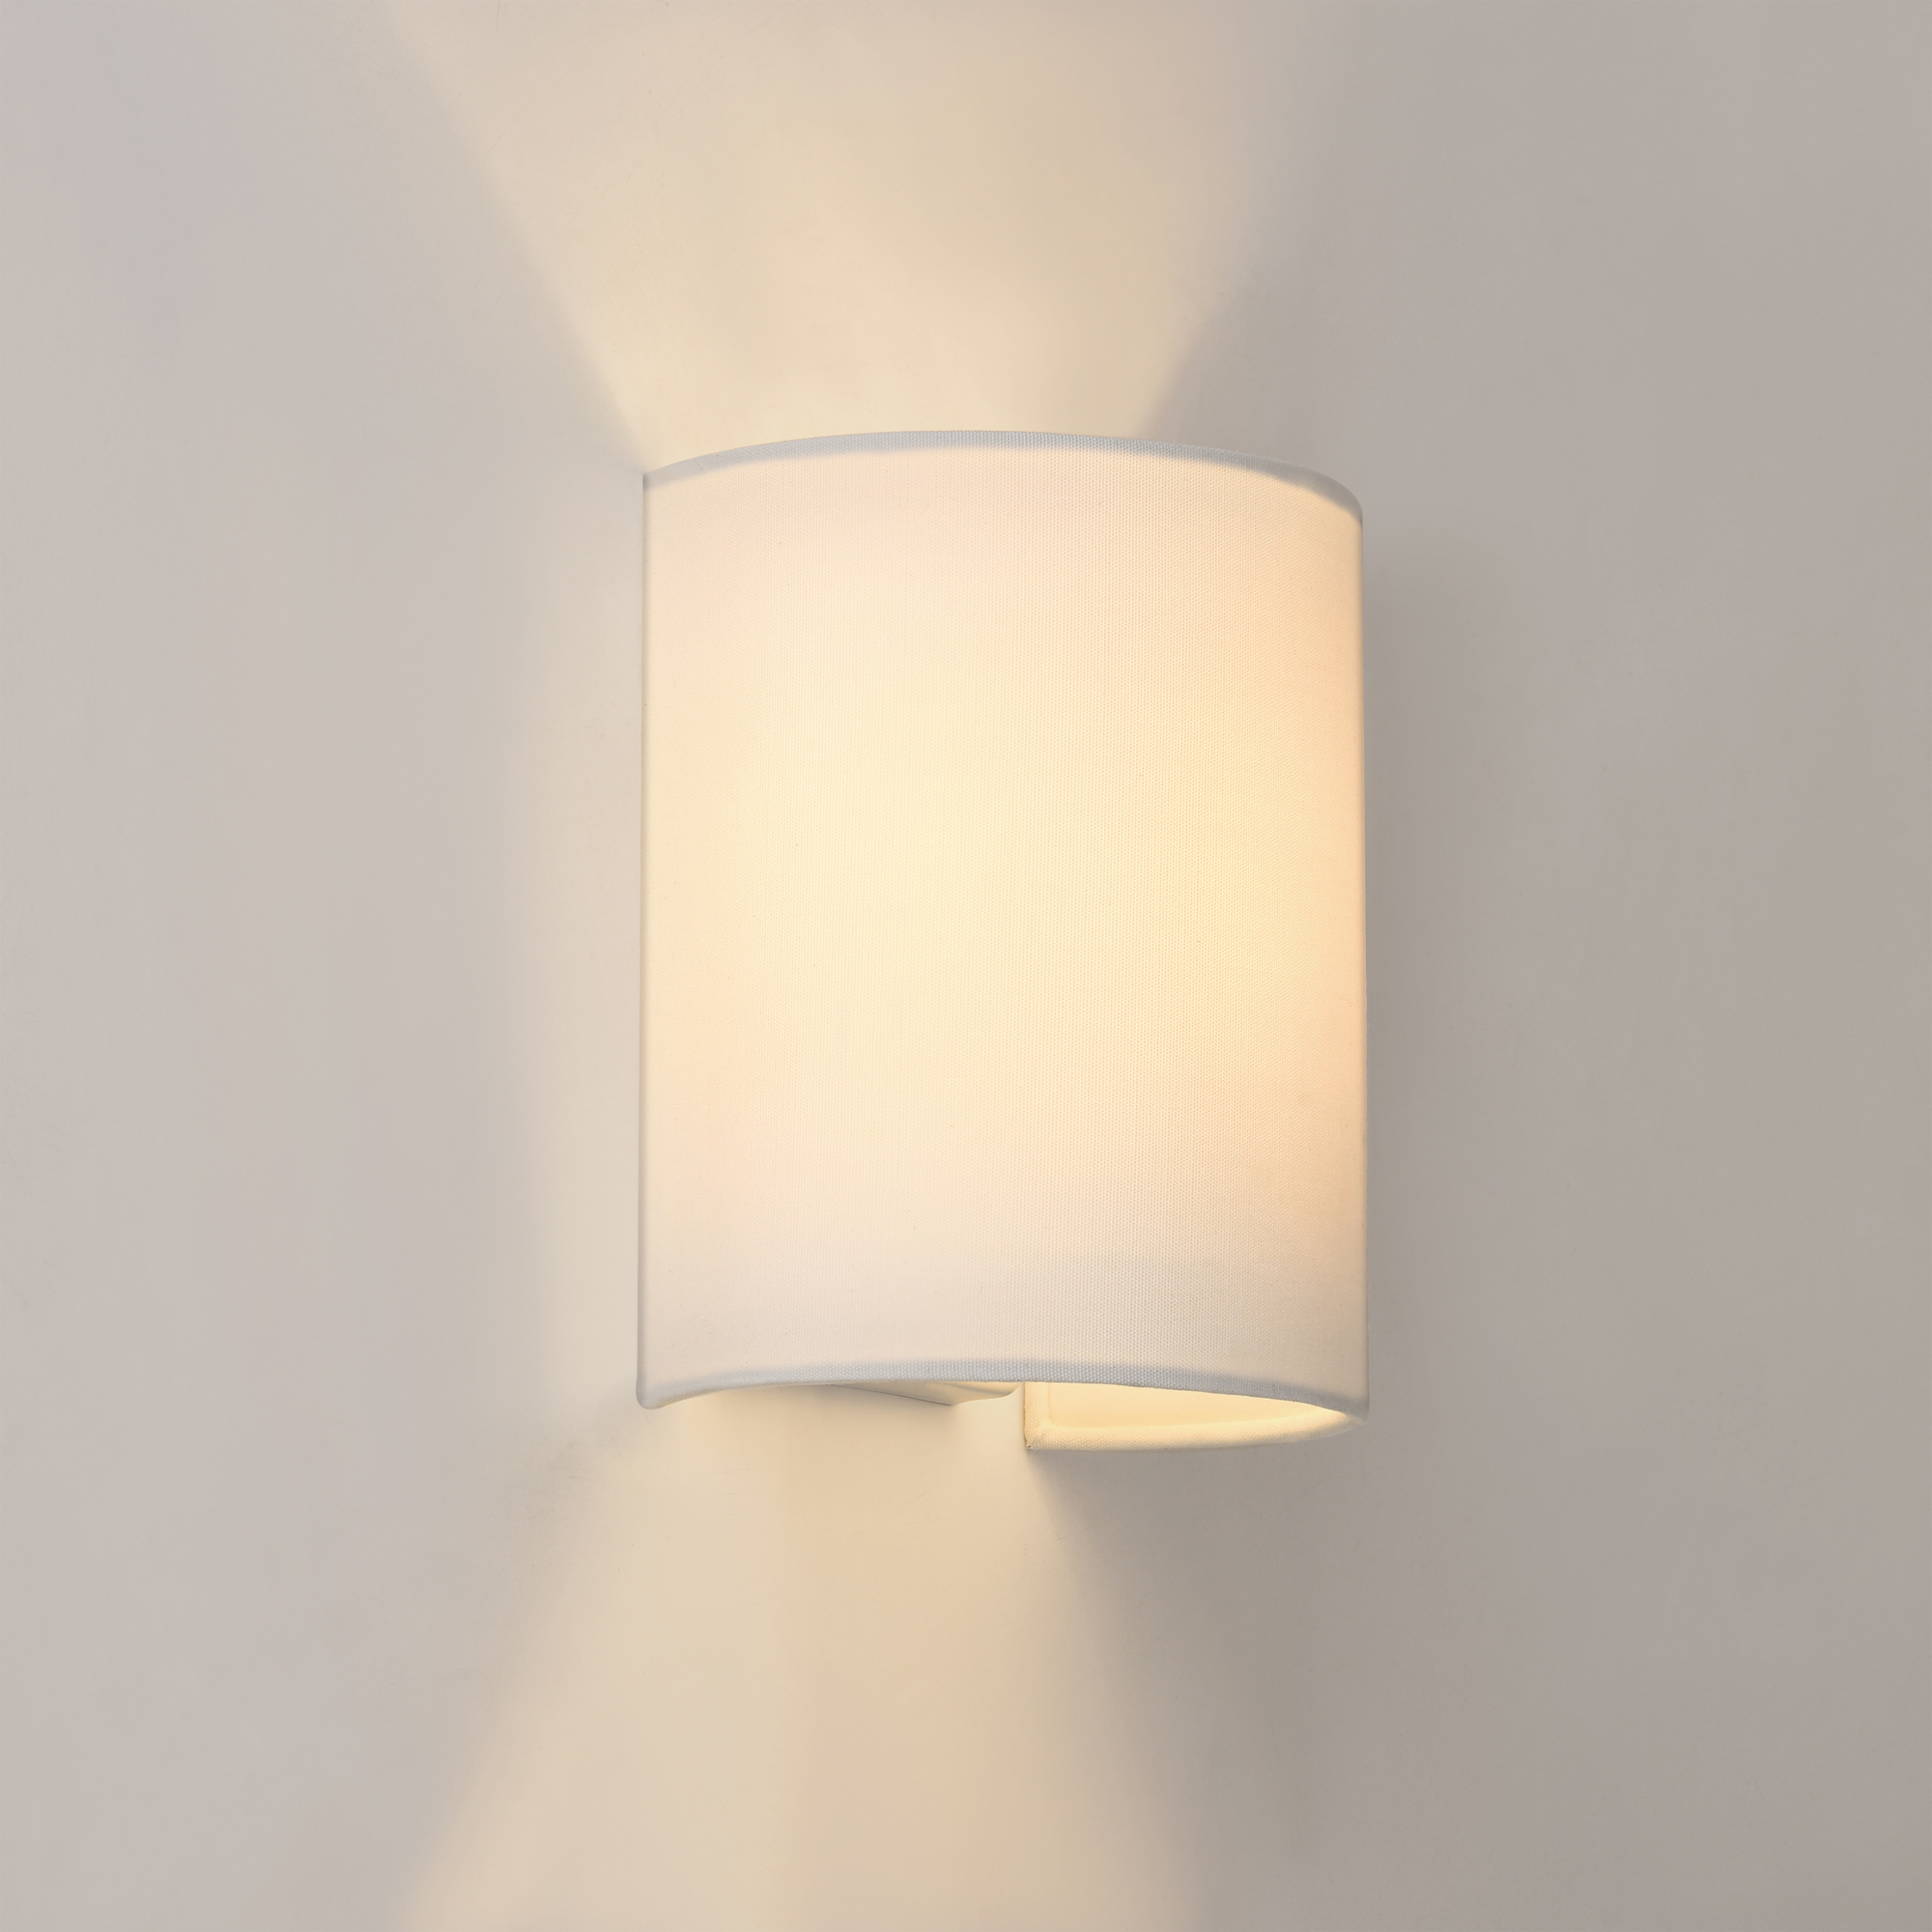 ® Wandleuchte Wandlampe Beleuchtung Flurlampe Wandstrahler Metall Weiß lux.pro